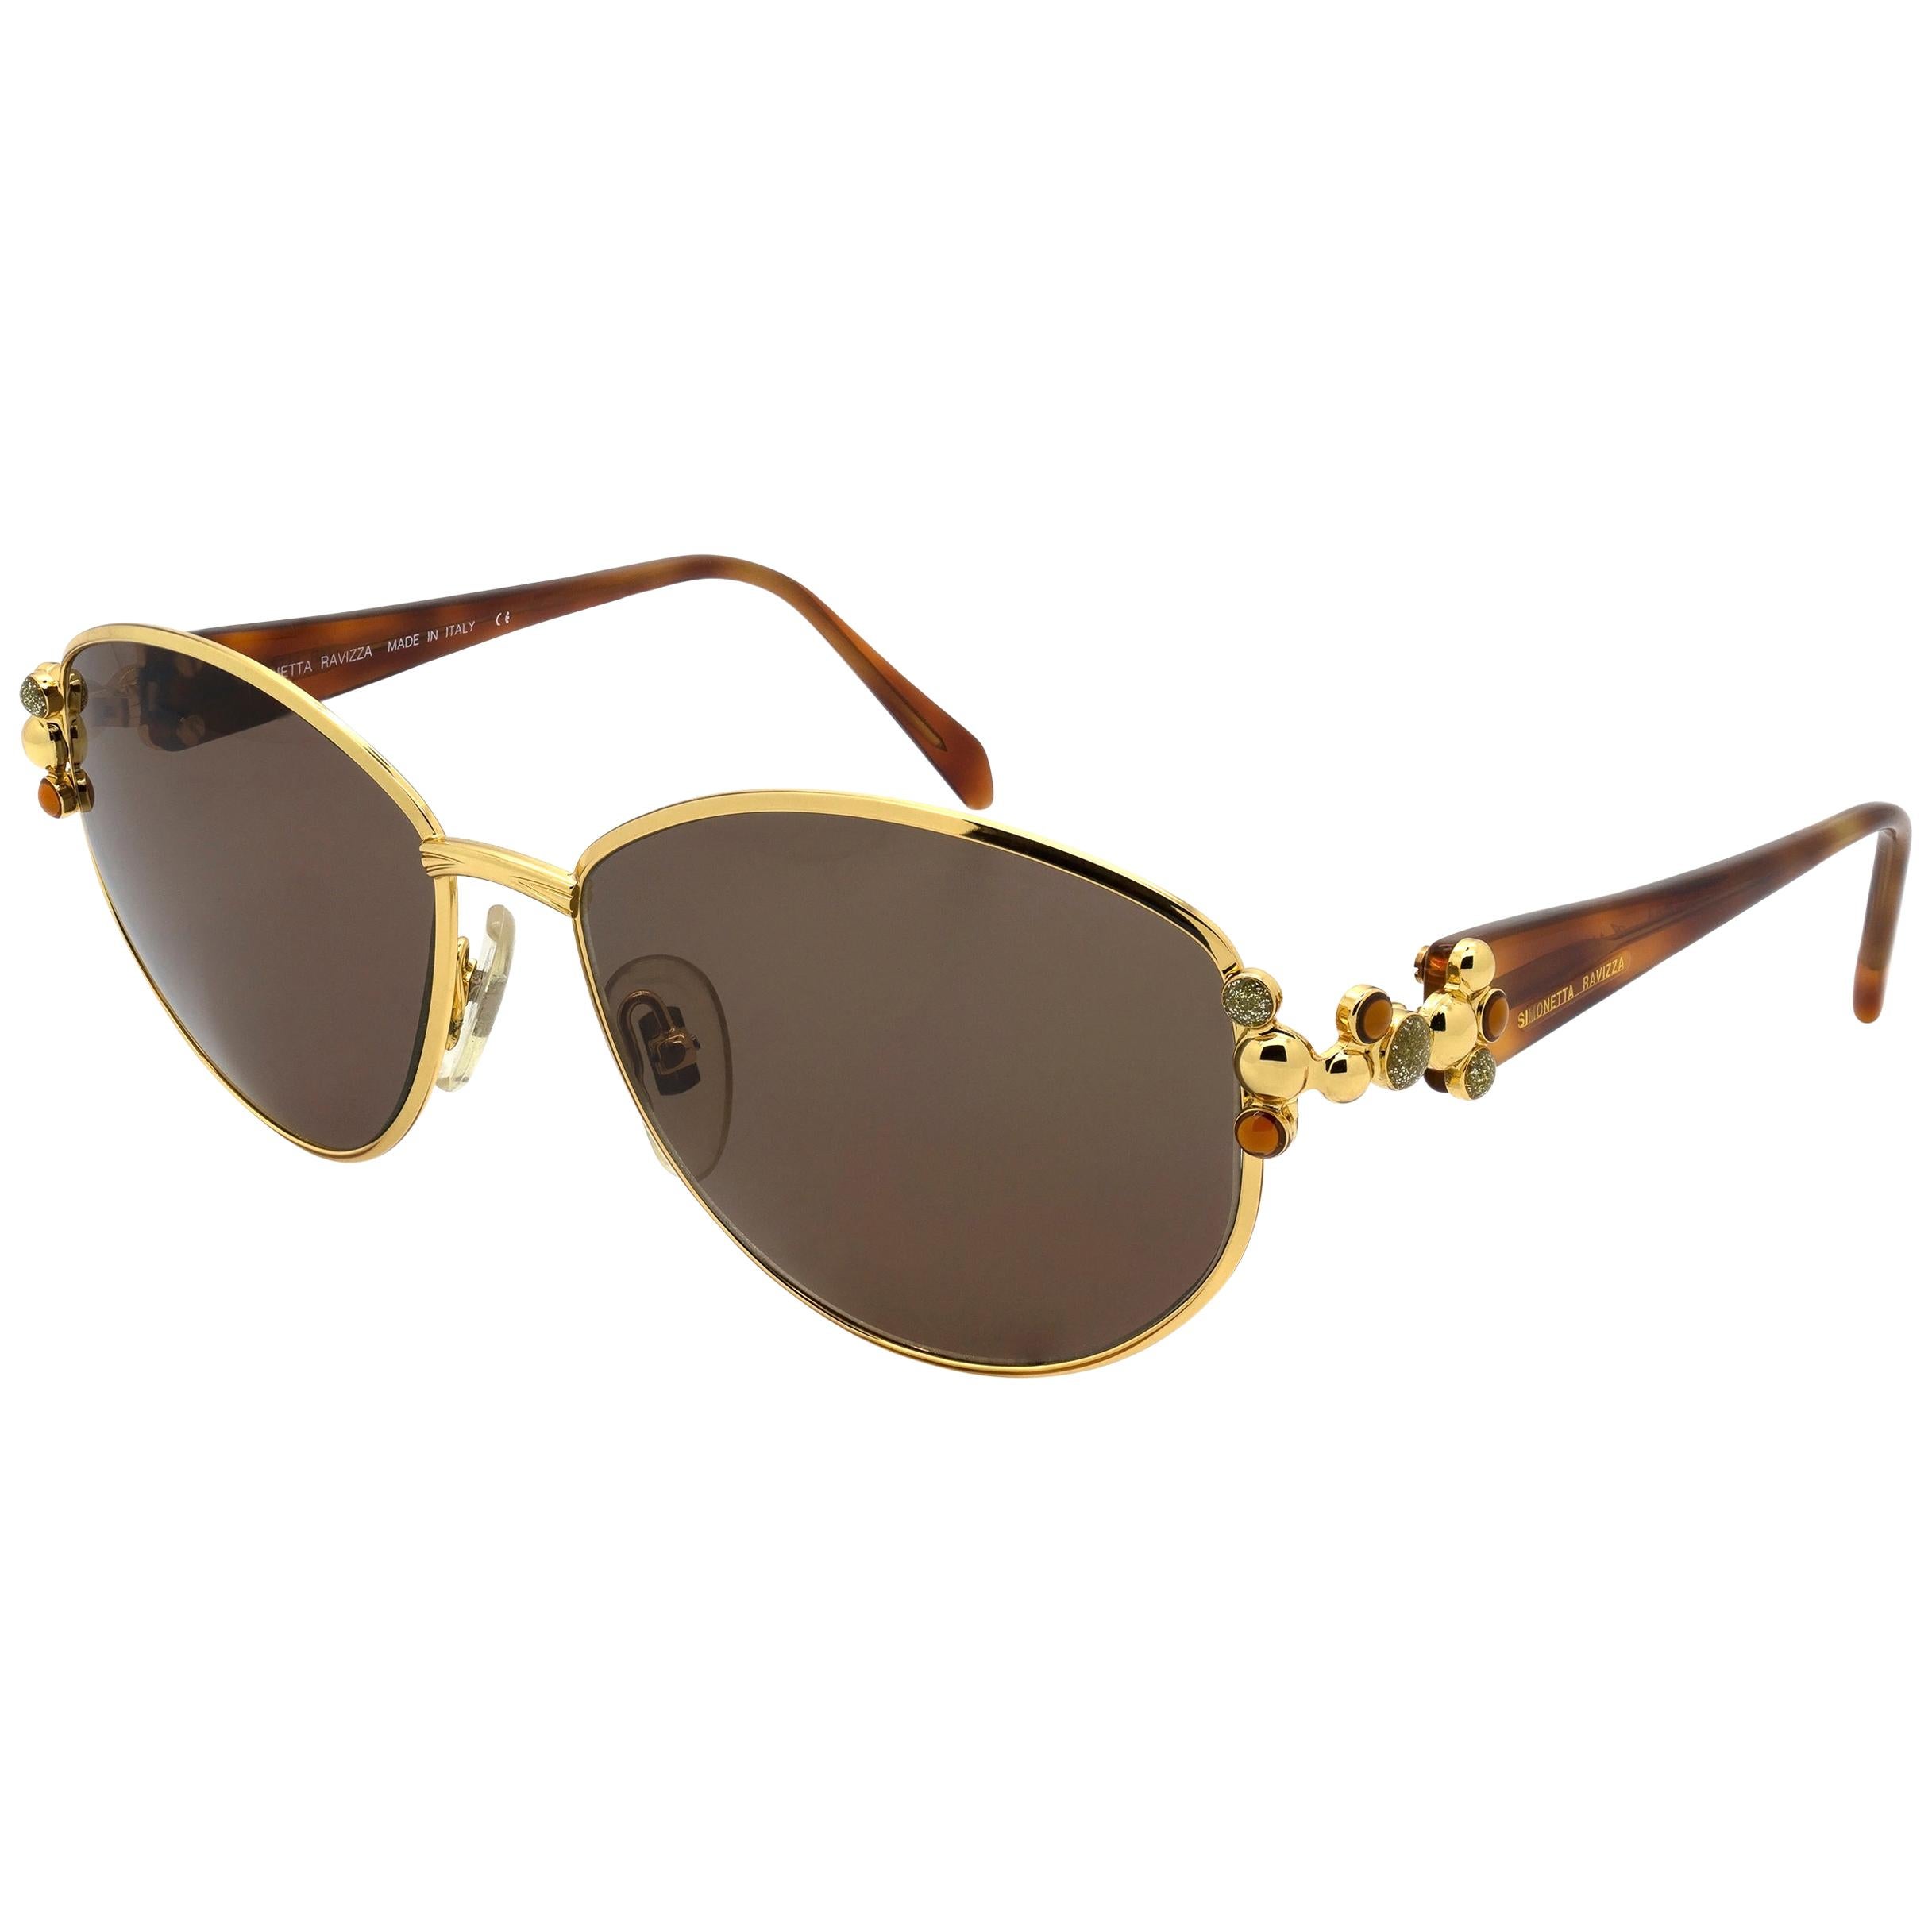 Simonetta Ravizza jewelry vintage sunglasses For Sale